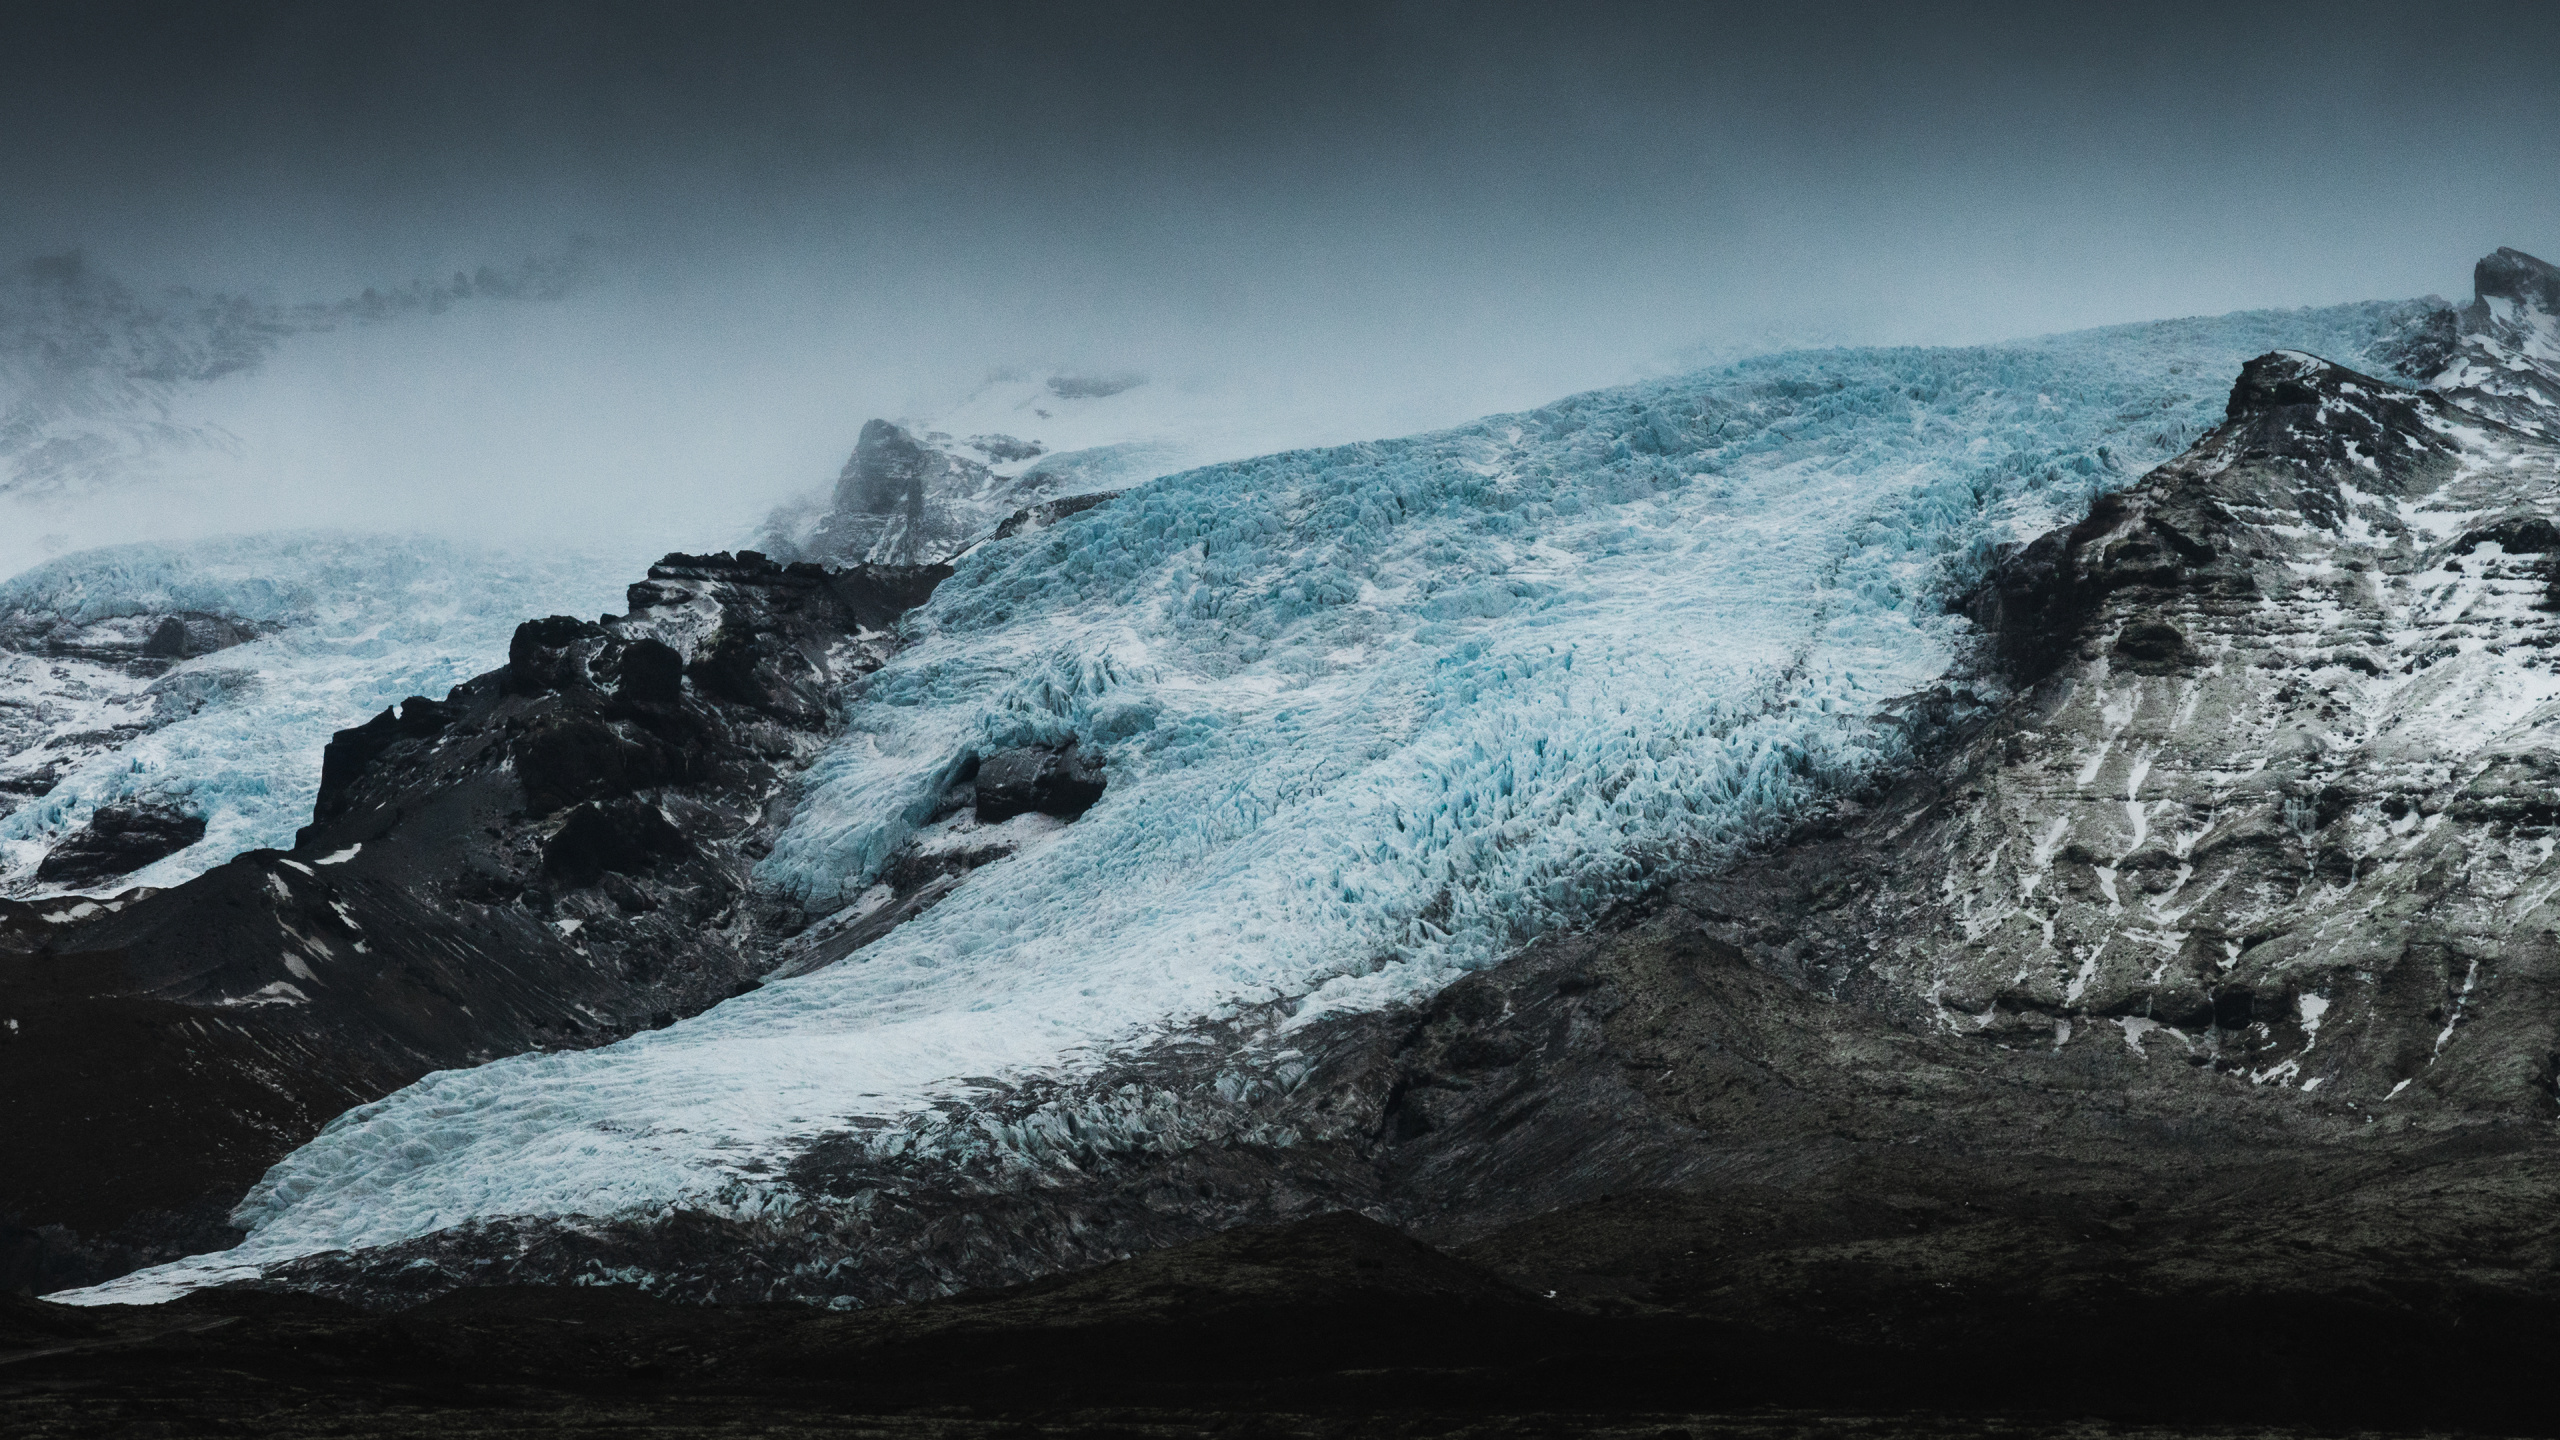 Gletscher, Natur, Mount Scenery, Schnee, Bergigen Landschaftsformen. Wallpaper in 2560x1440 Resolution